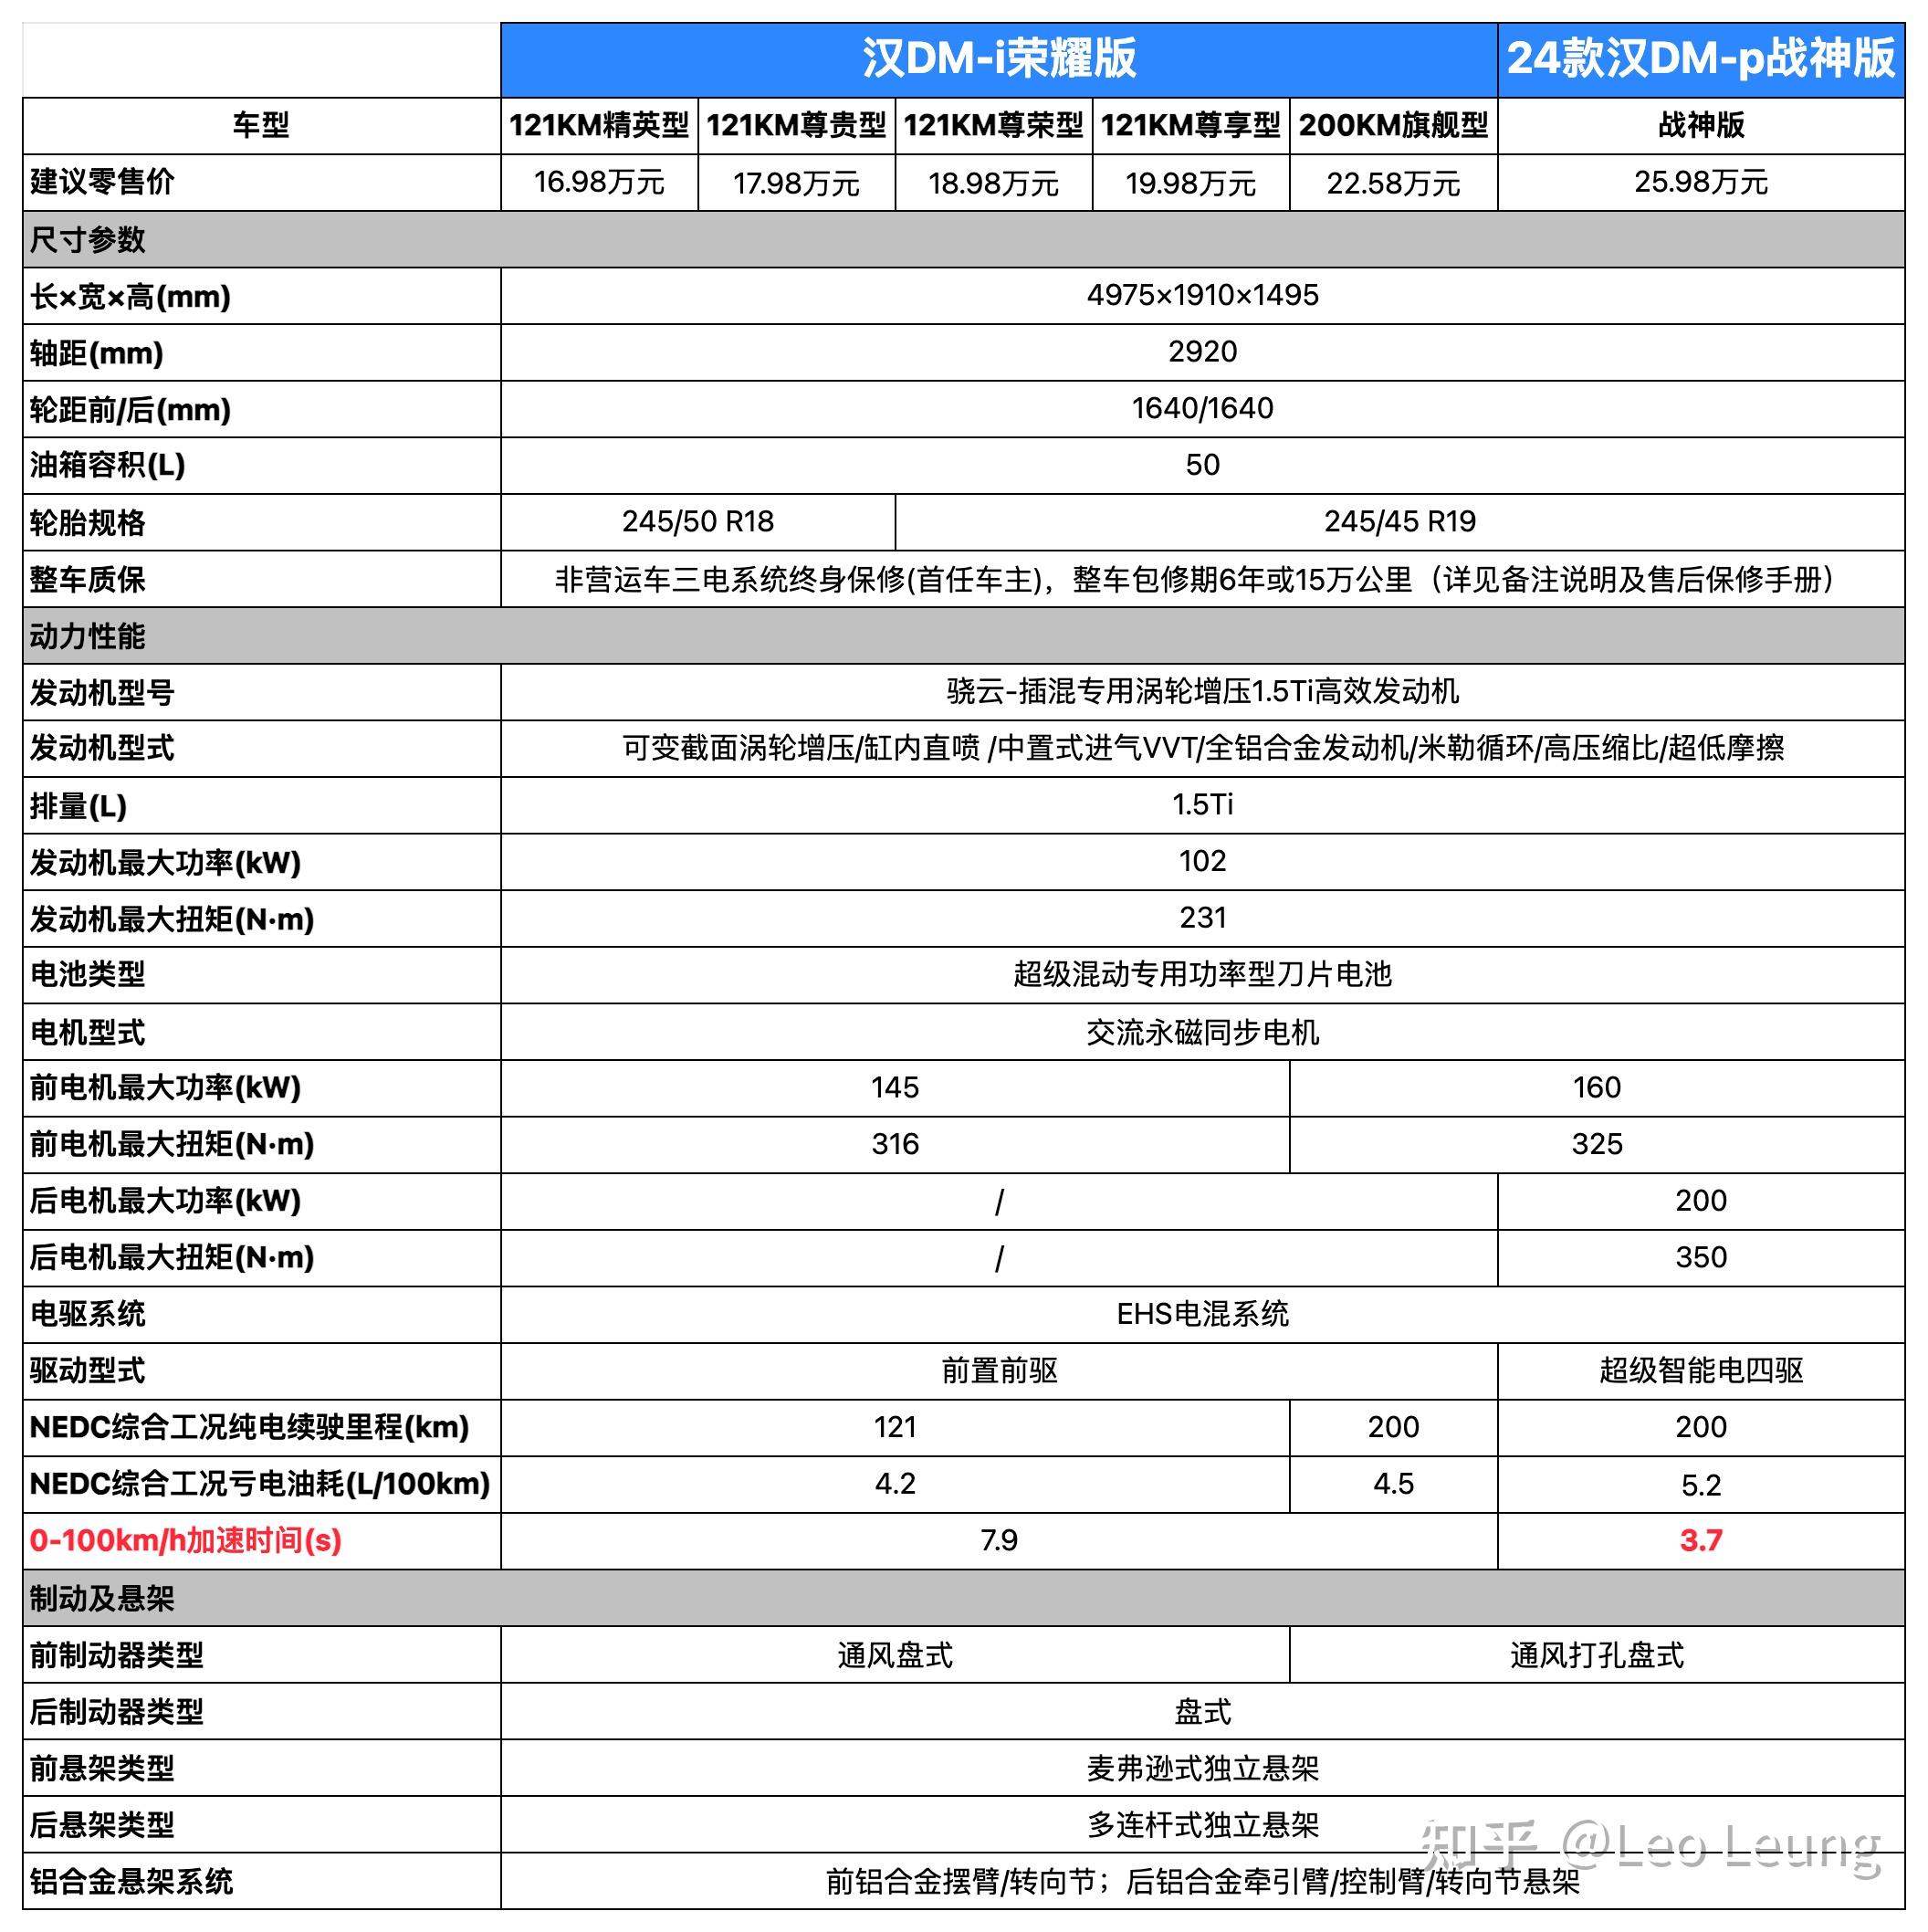 2 月 28 日比亚迪发布汉唐荣耀版,向电比油低发起总攻!仅17